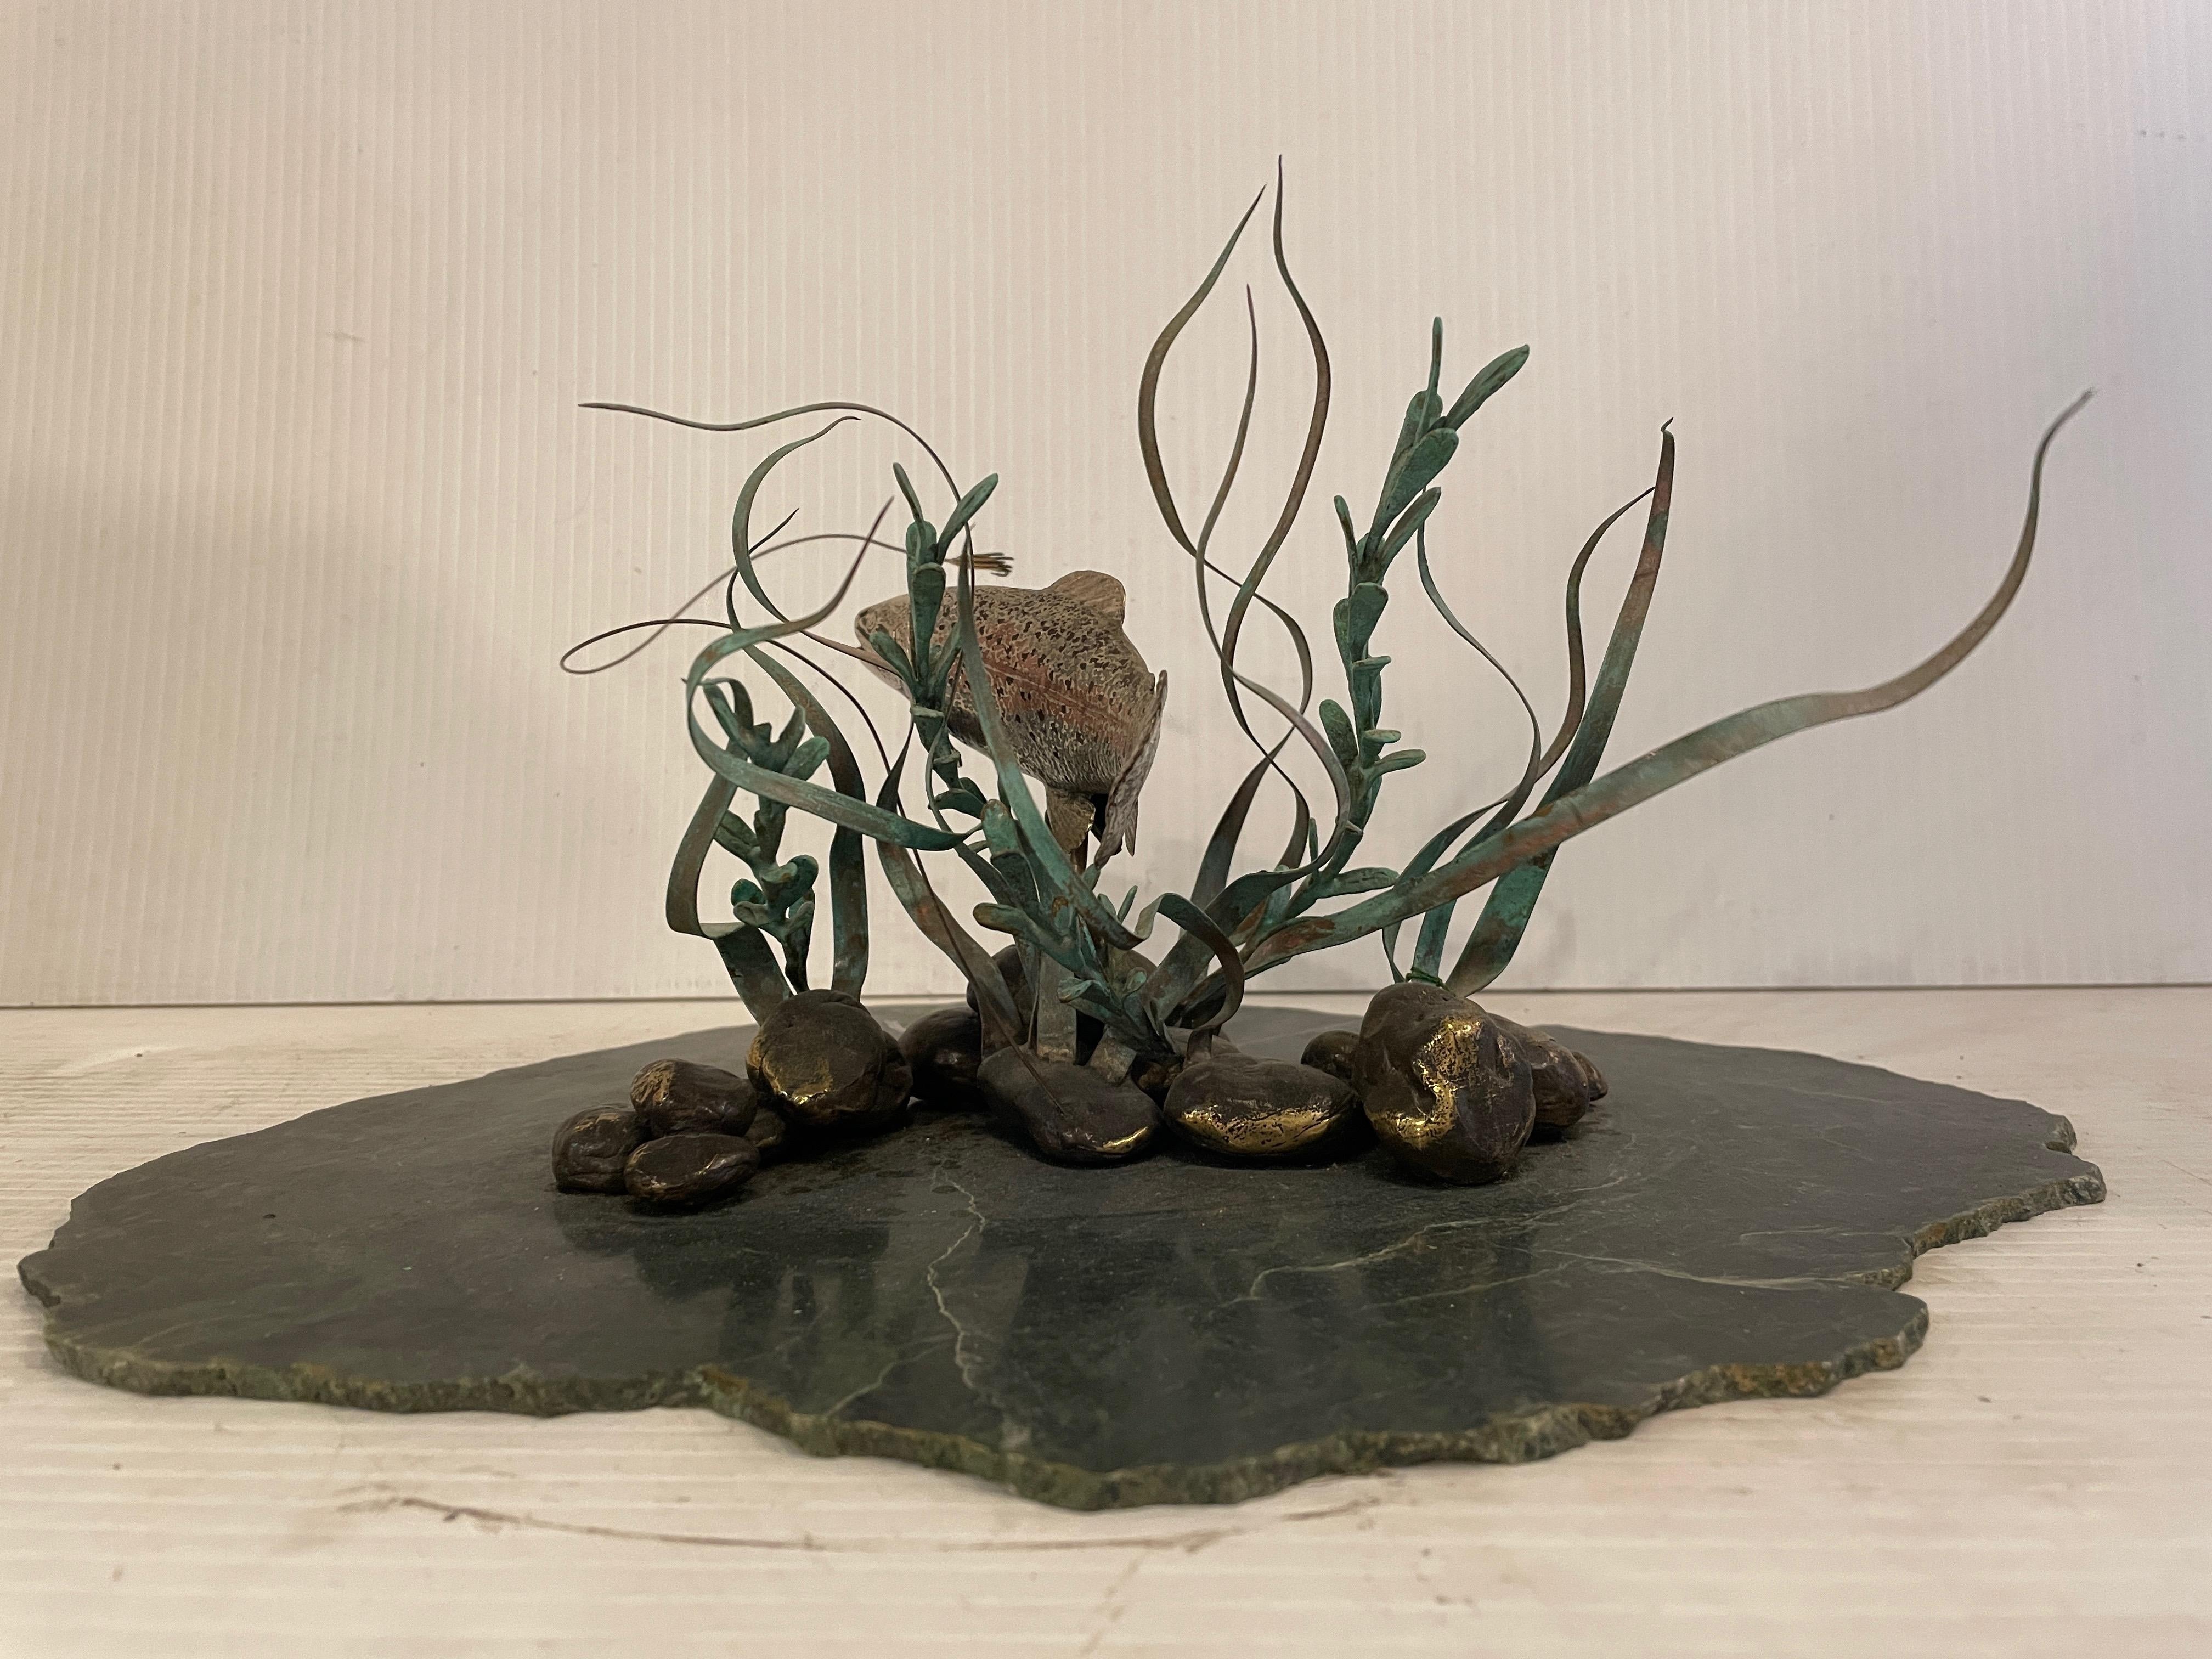 Cette sculpture moderne vintage très unique représente un poisson en bronze nageant dans un champ d'algues sur une base en marbre vert. Cette sculpture vraiment unique en son genre serait une pièce maîtresse dans n'importe quelle maison.

Veuillez